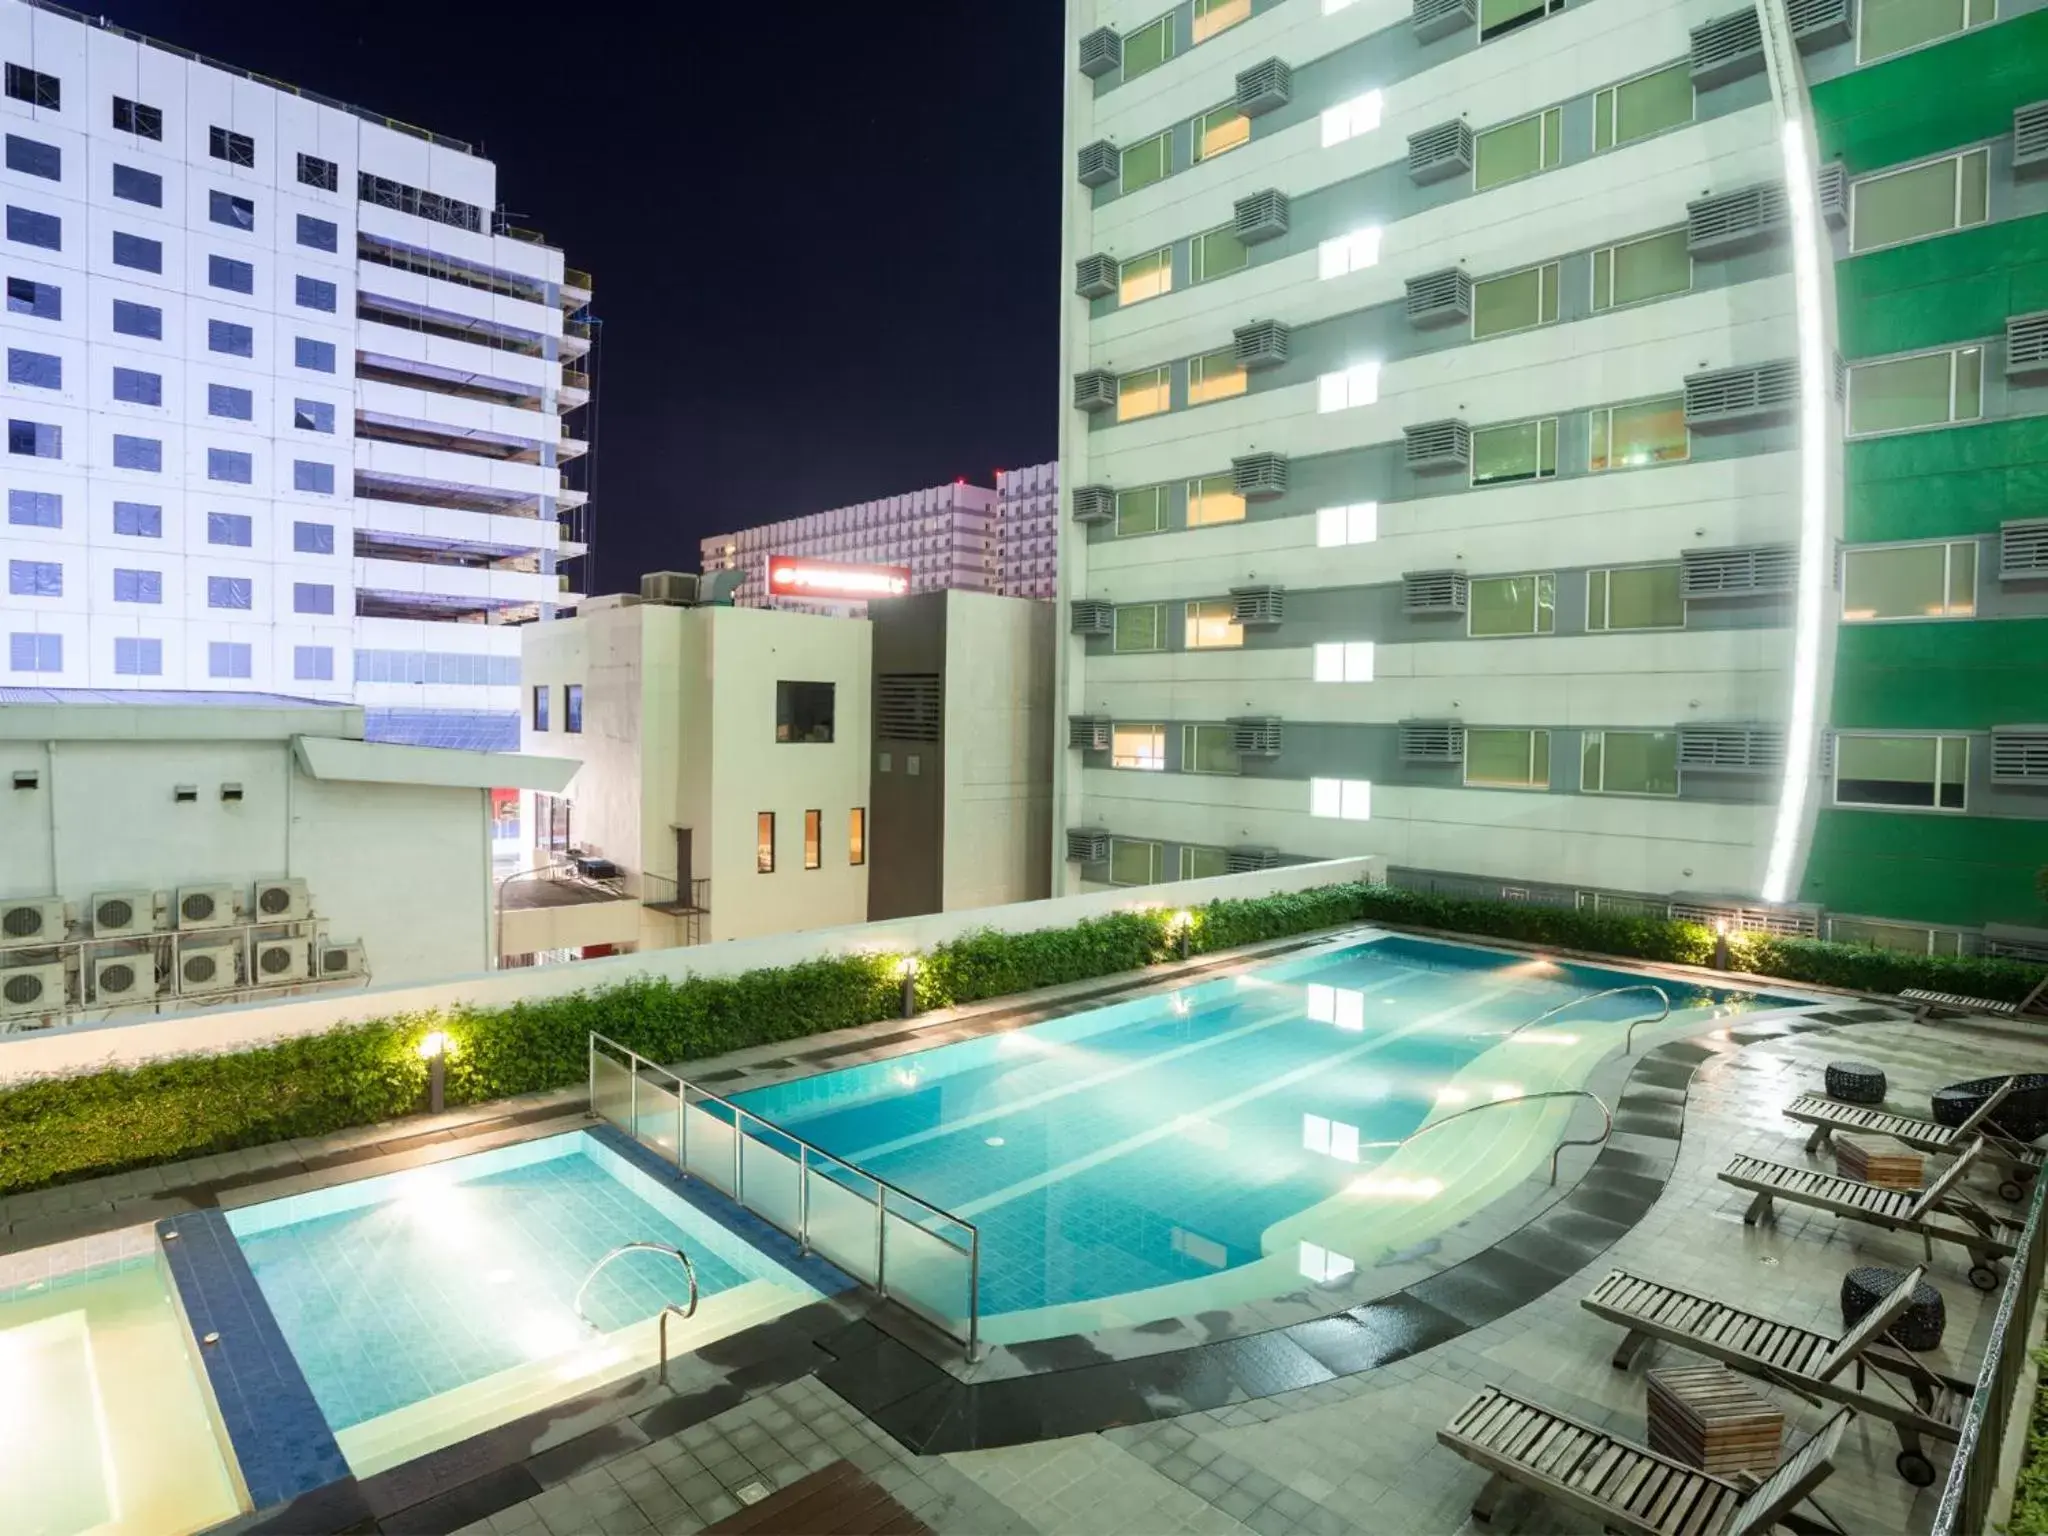 Night, Swimming Pool in Hotel 101 - Manila